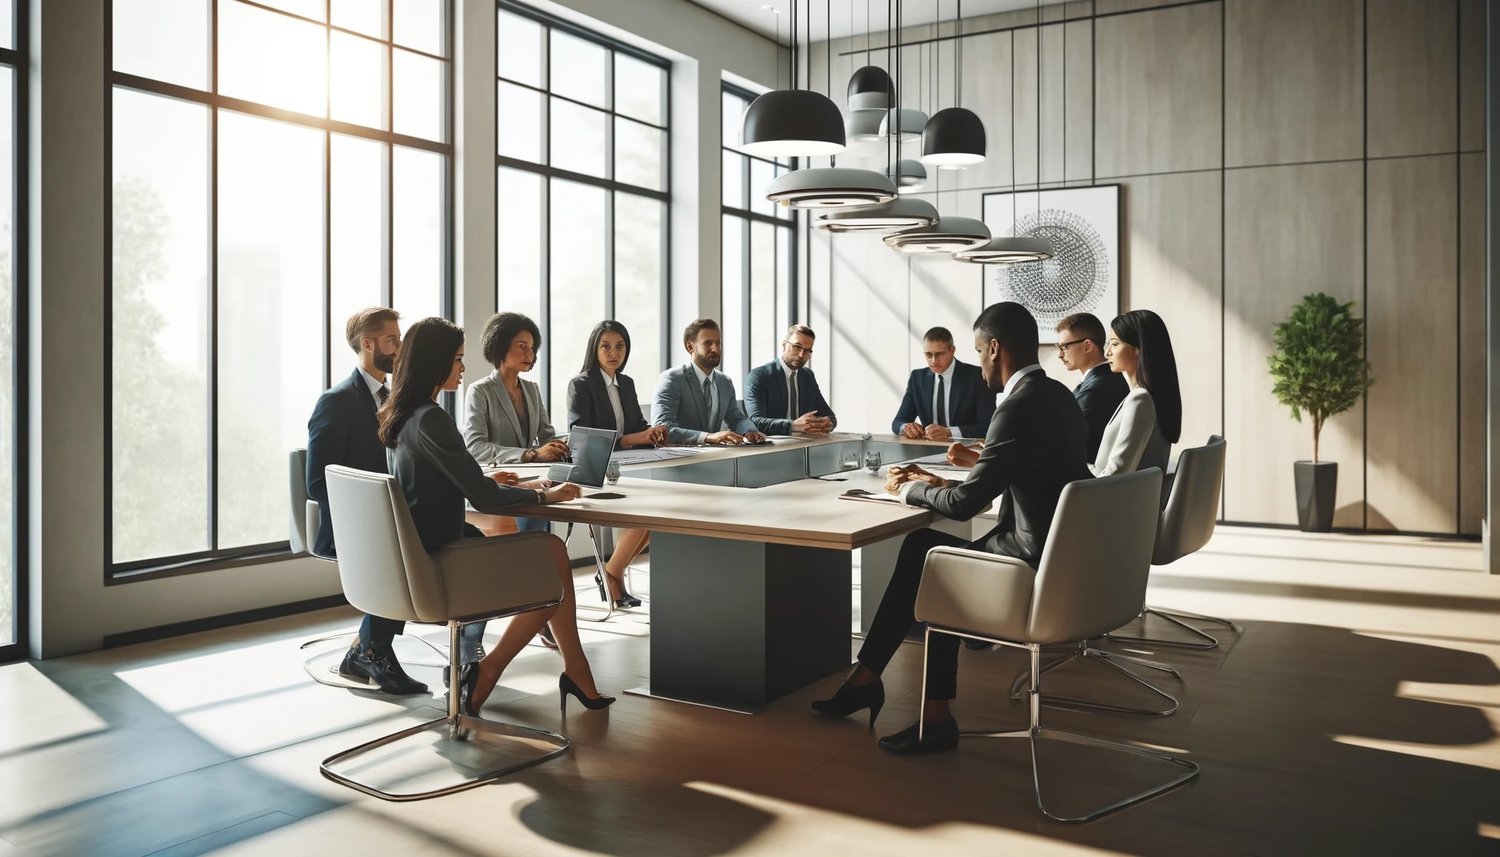 Diverse Executives Around boardroom table